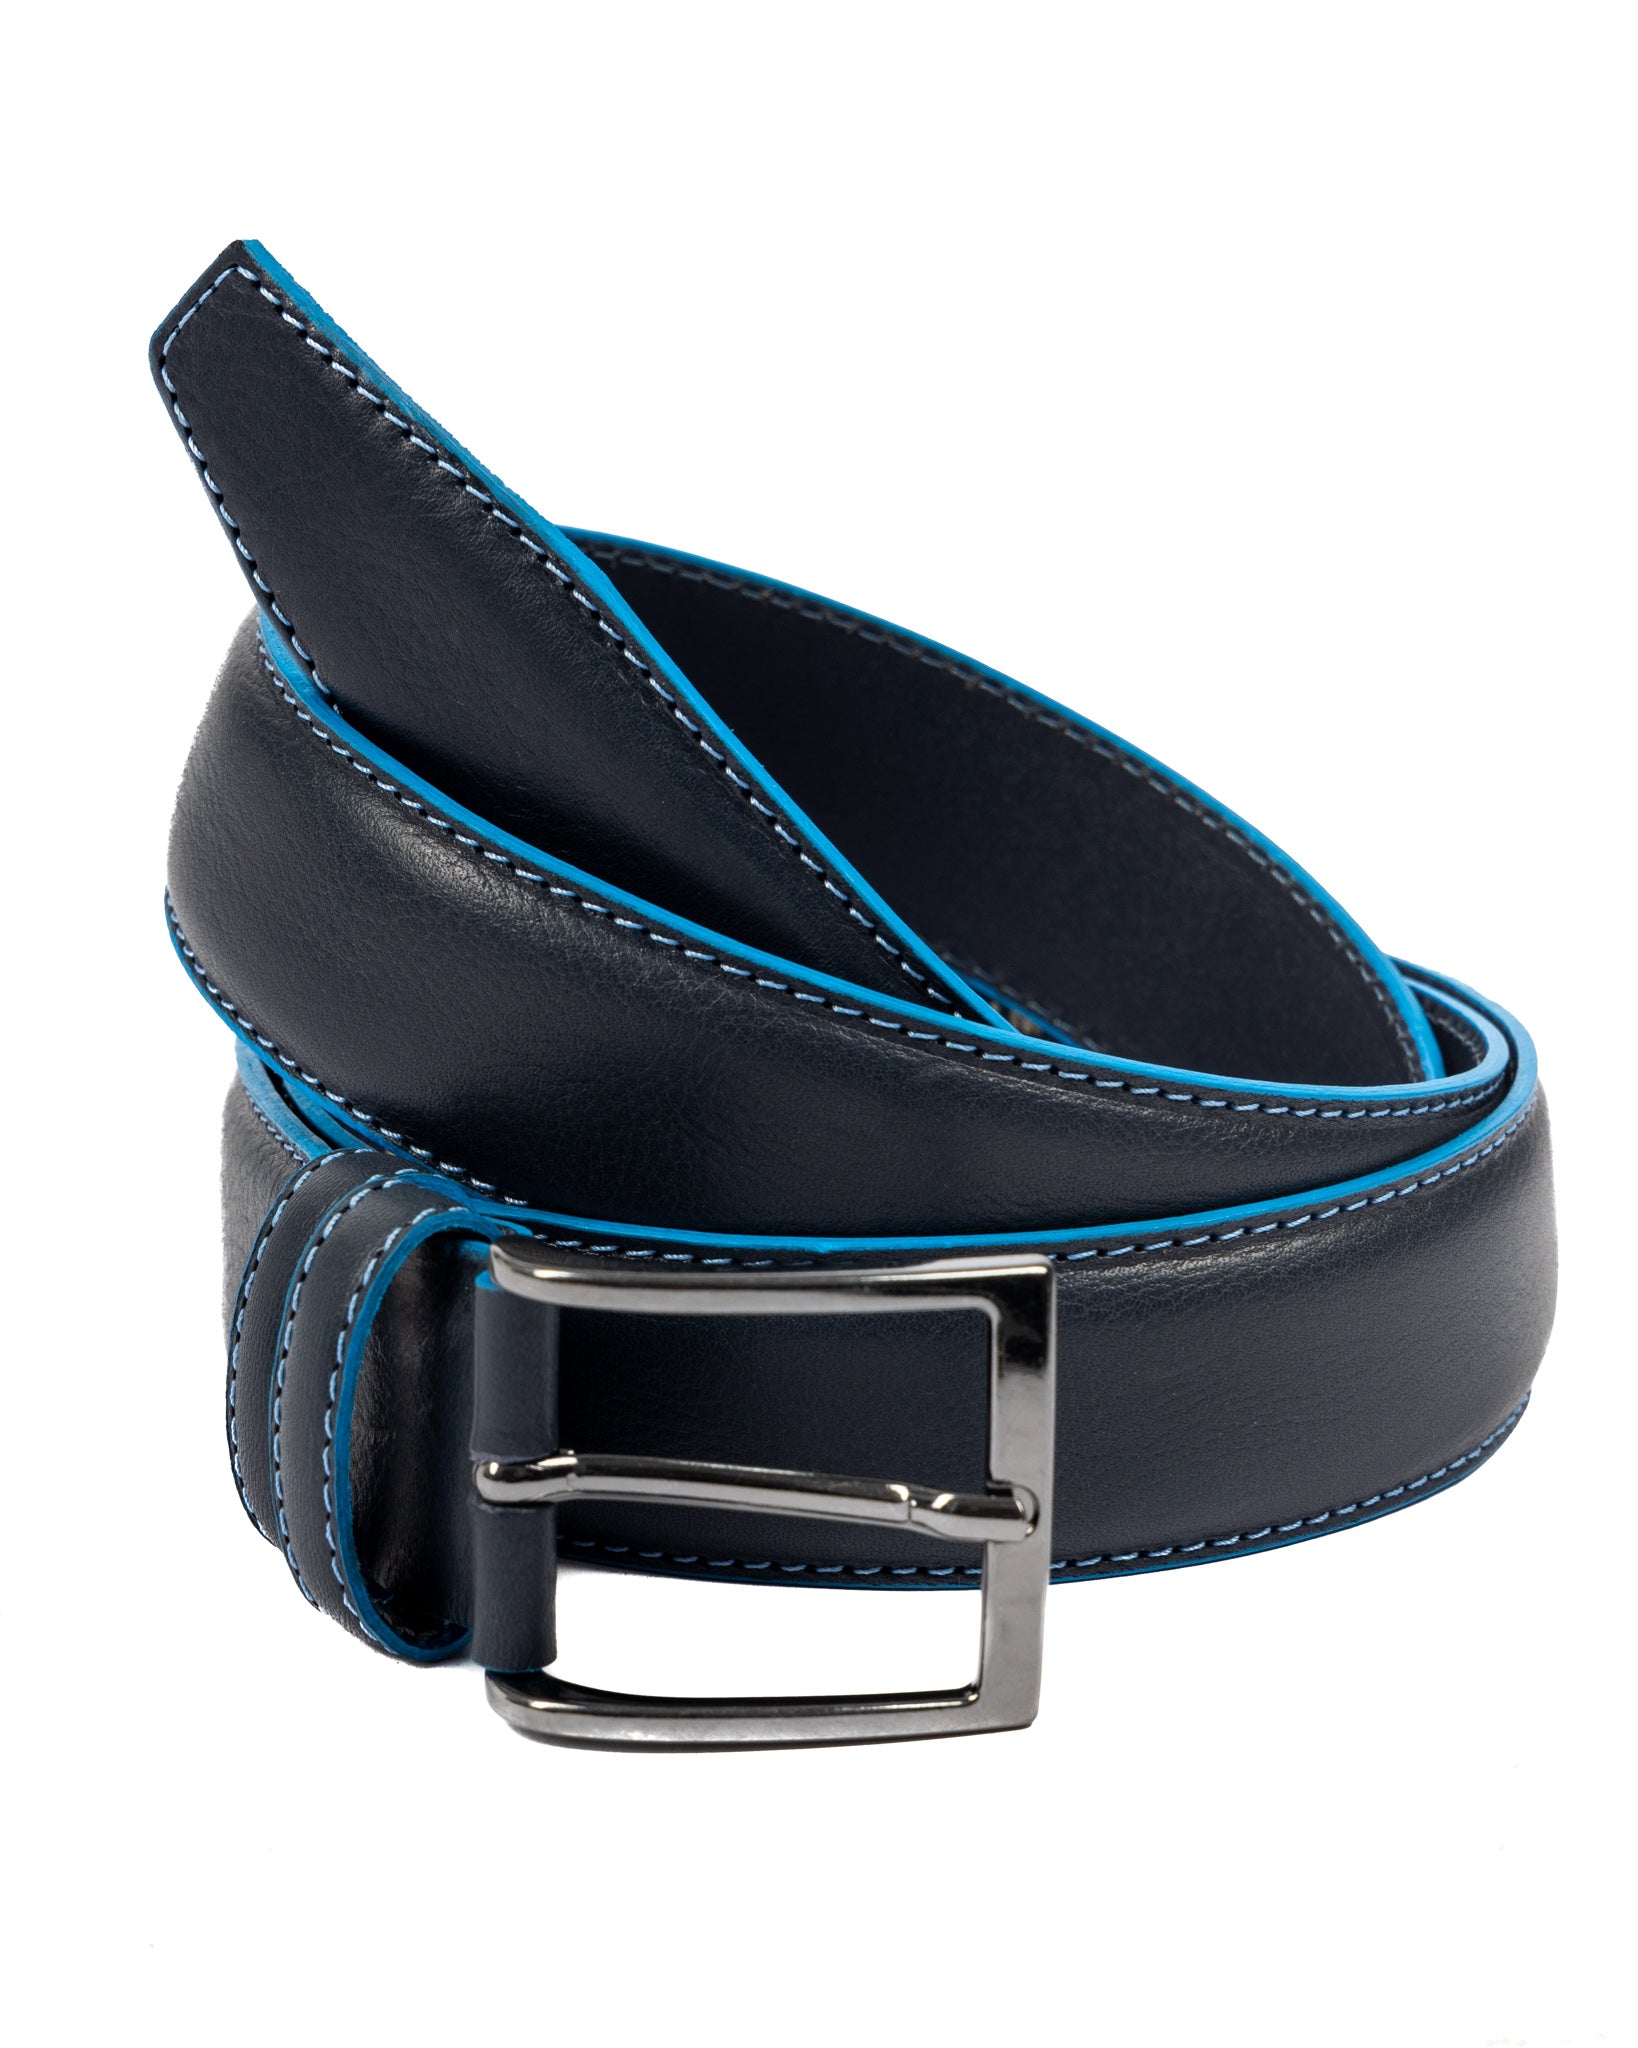 Pienza - ceinture en cuir bleu avec surpiqûres contrastées